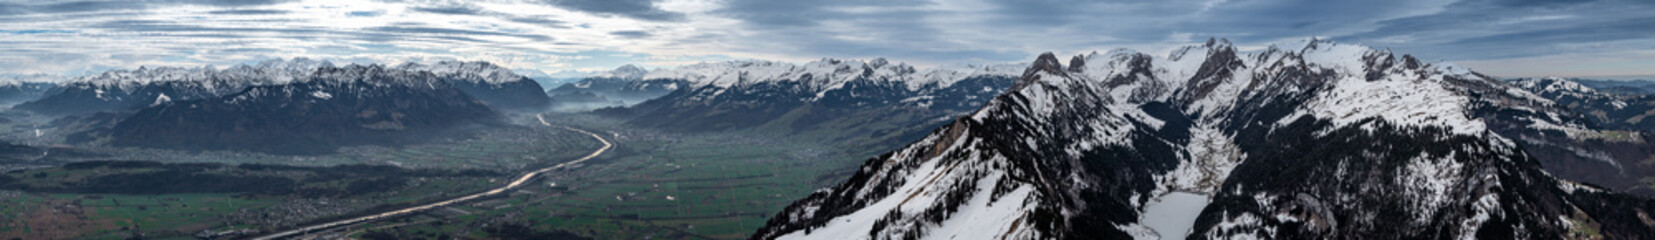 Appenzell, Schweiz: Panorama des Säntis, der über dem Rheintal aufragt